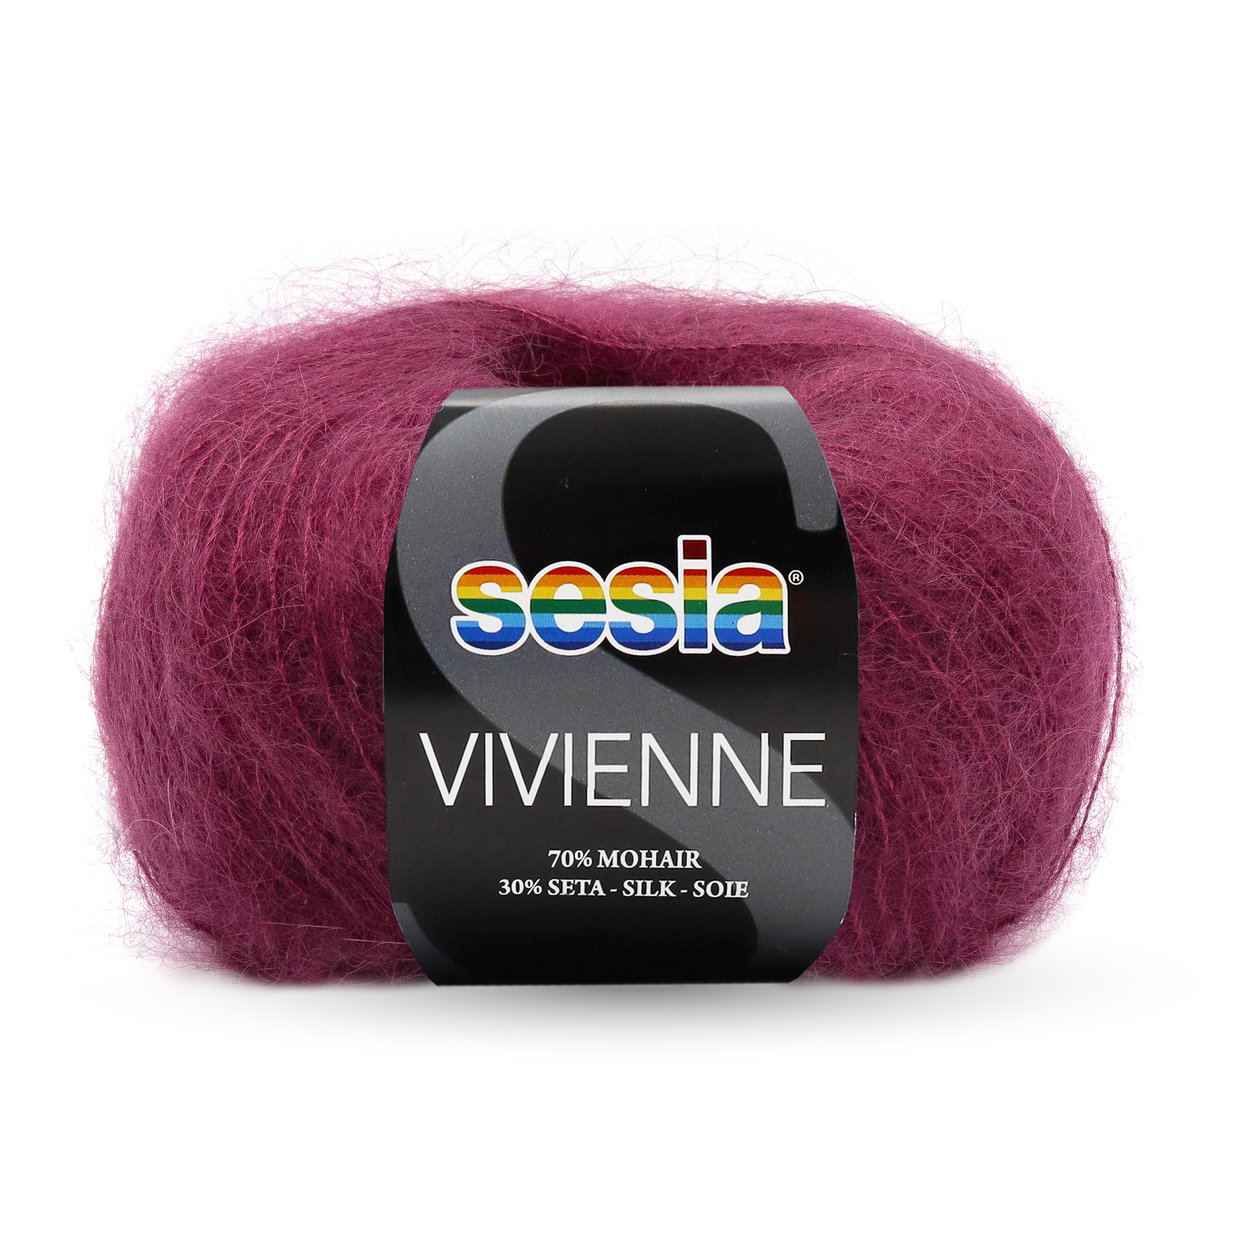 SESIA Vivienne - 5025 Bordeaux